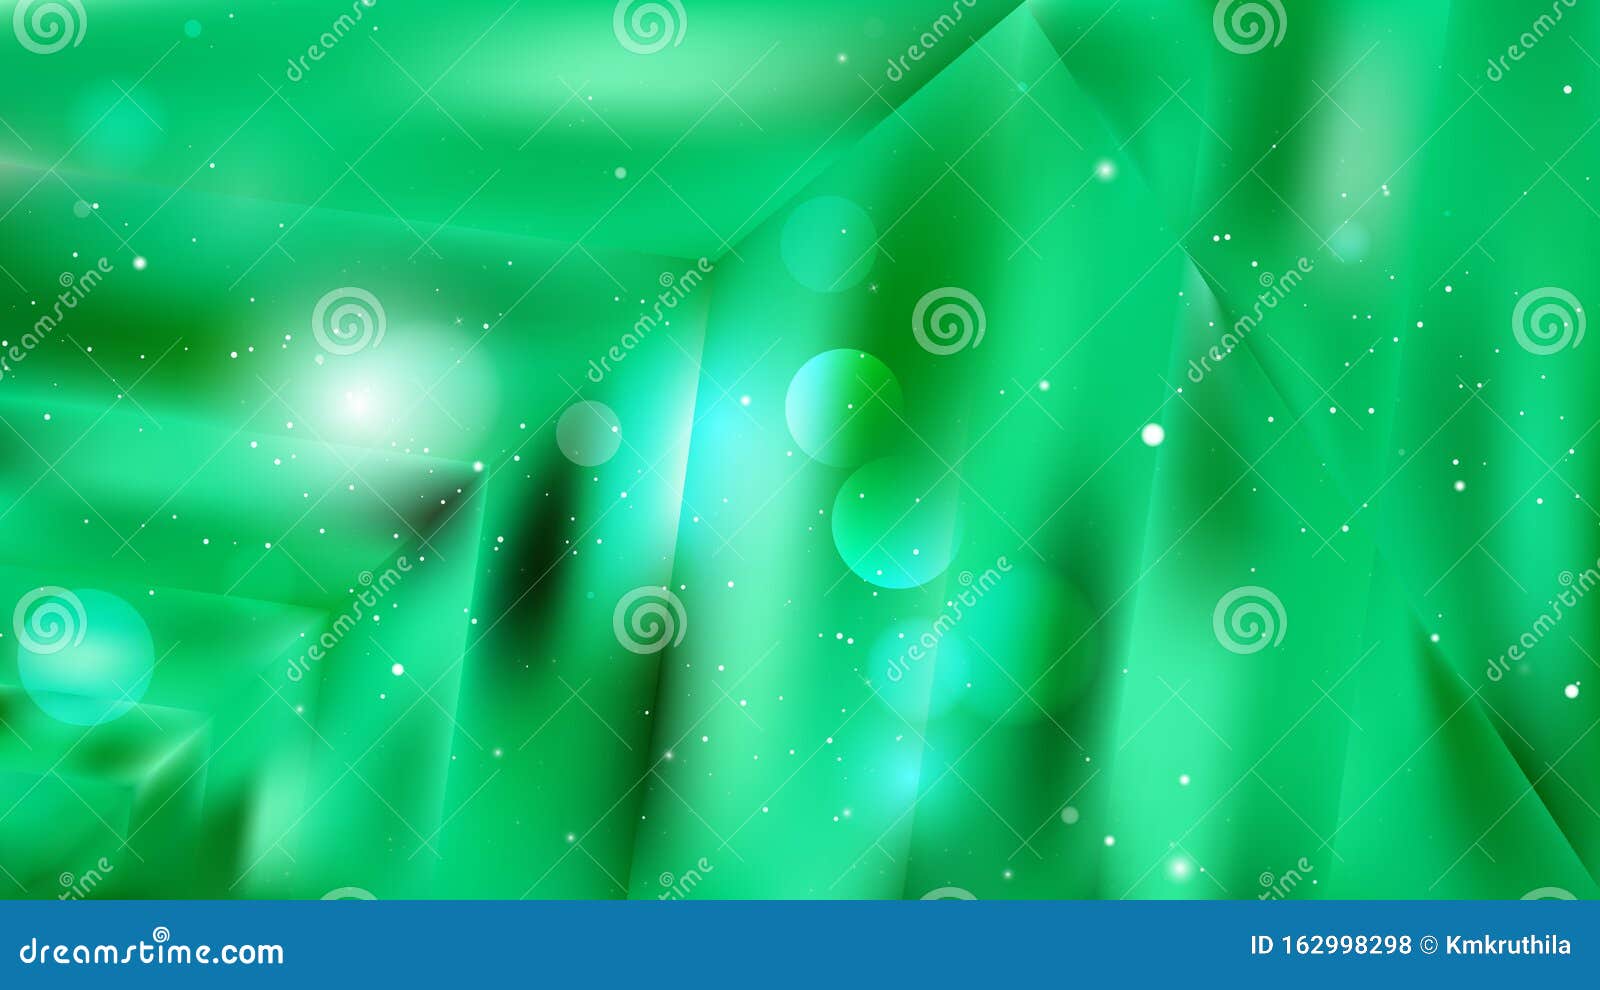 Tận hưởng những hình minh họa trừu tượng của nền emerald green background với thiết kế nền background màu ngọc lam thật sự hoàn hảo. Sự kết hợp giữa màu xanh ngọc bích và thiết kế nền background màu ngọc lam giúp tạo nên hình ảnh độc đáo và thu hút.